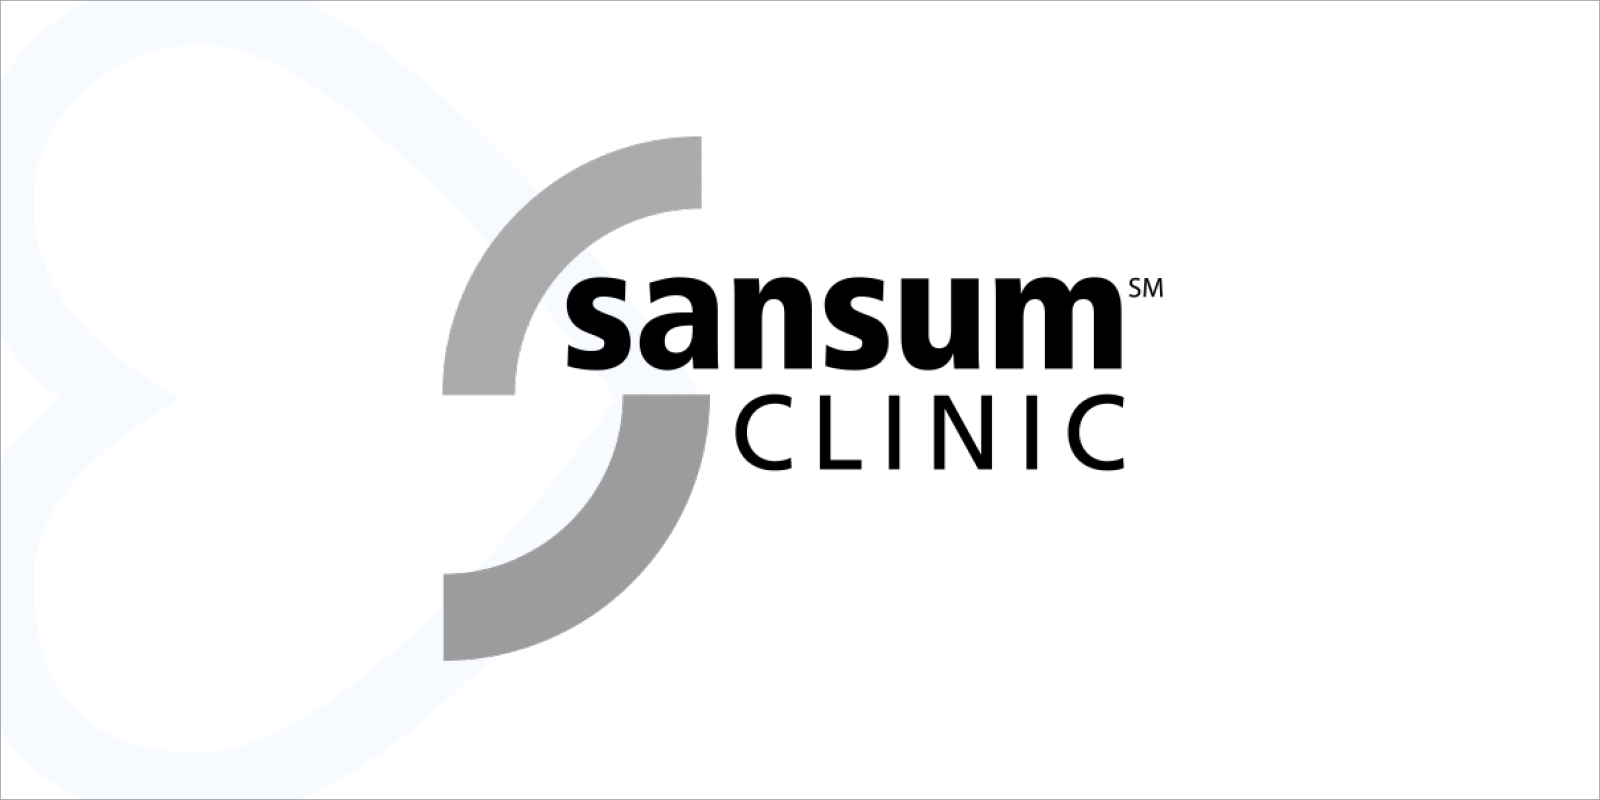 sansum-clinic-case-study-thumbnail.png